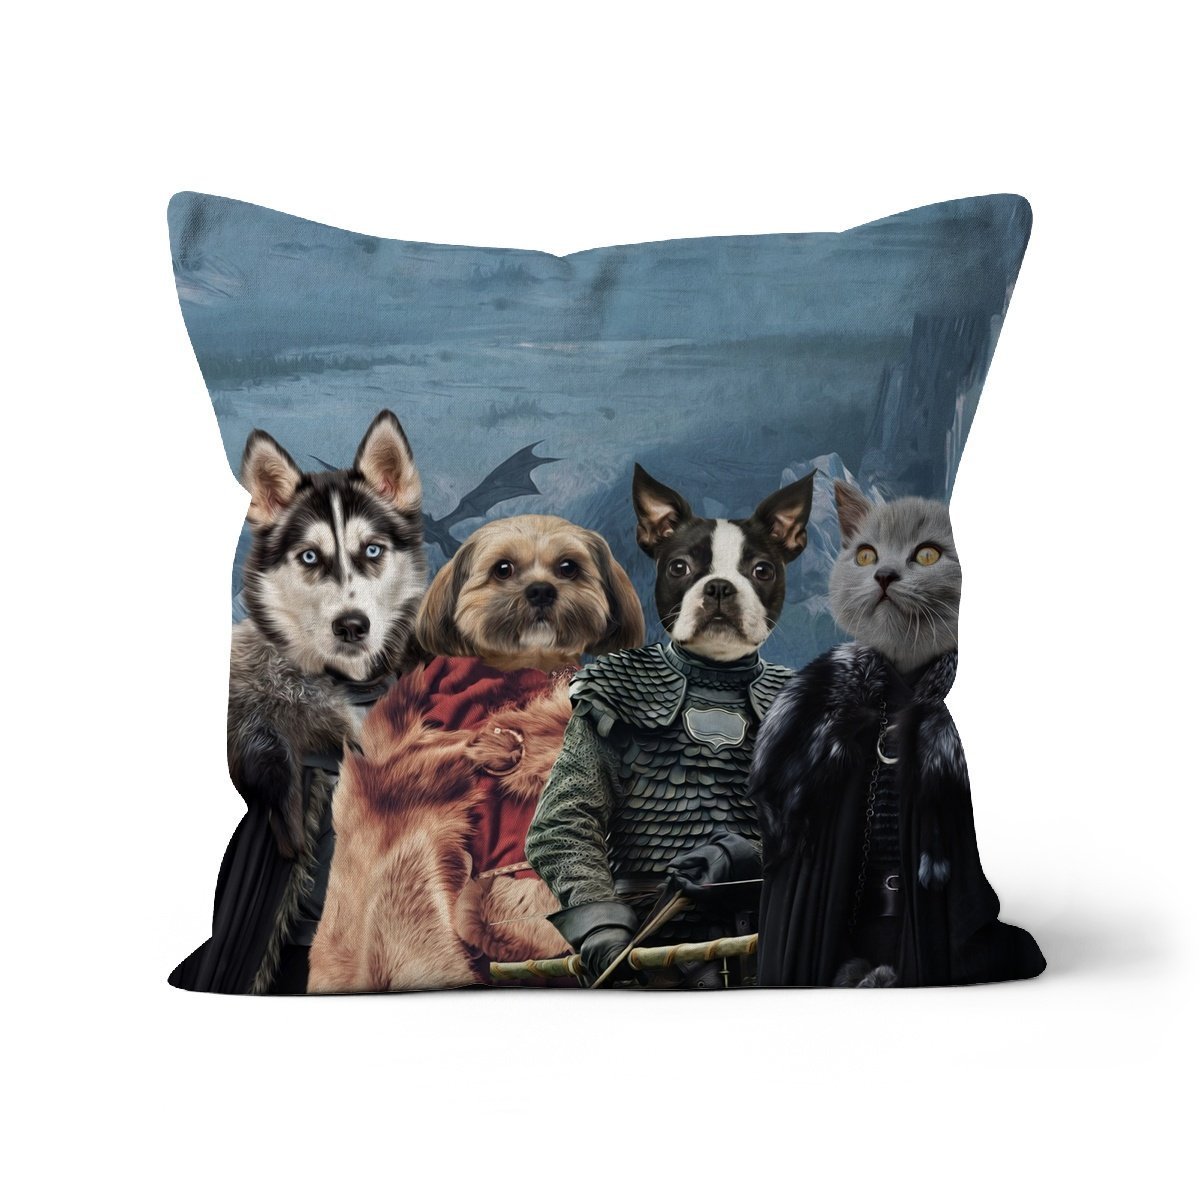 Print Your Digital 4 Pet Portrait On A Cushion - Paw & Glory - #pet portraits# - #dog portraits# - #pet portraits uk#paw & glory, custom pet portrait pillow,pet print pillow, photo pet pillow, pet custom pillow, custom cat pillows, dog pillows personalized